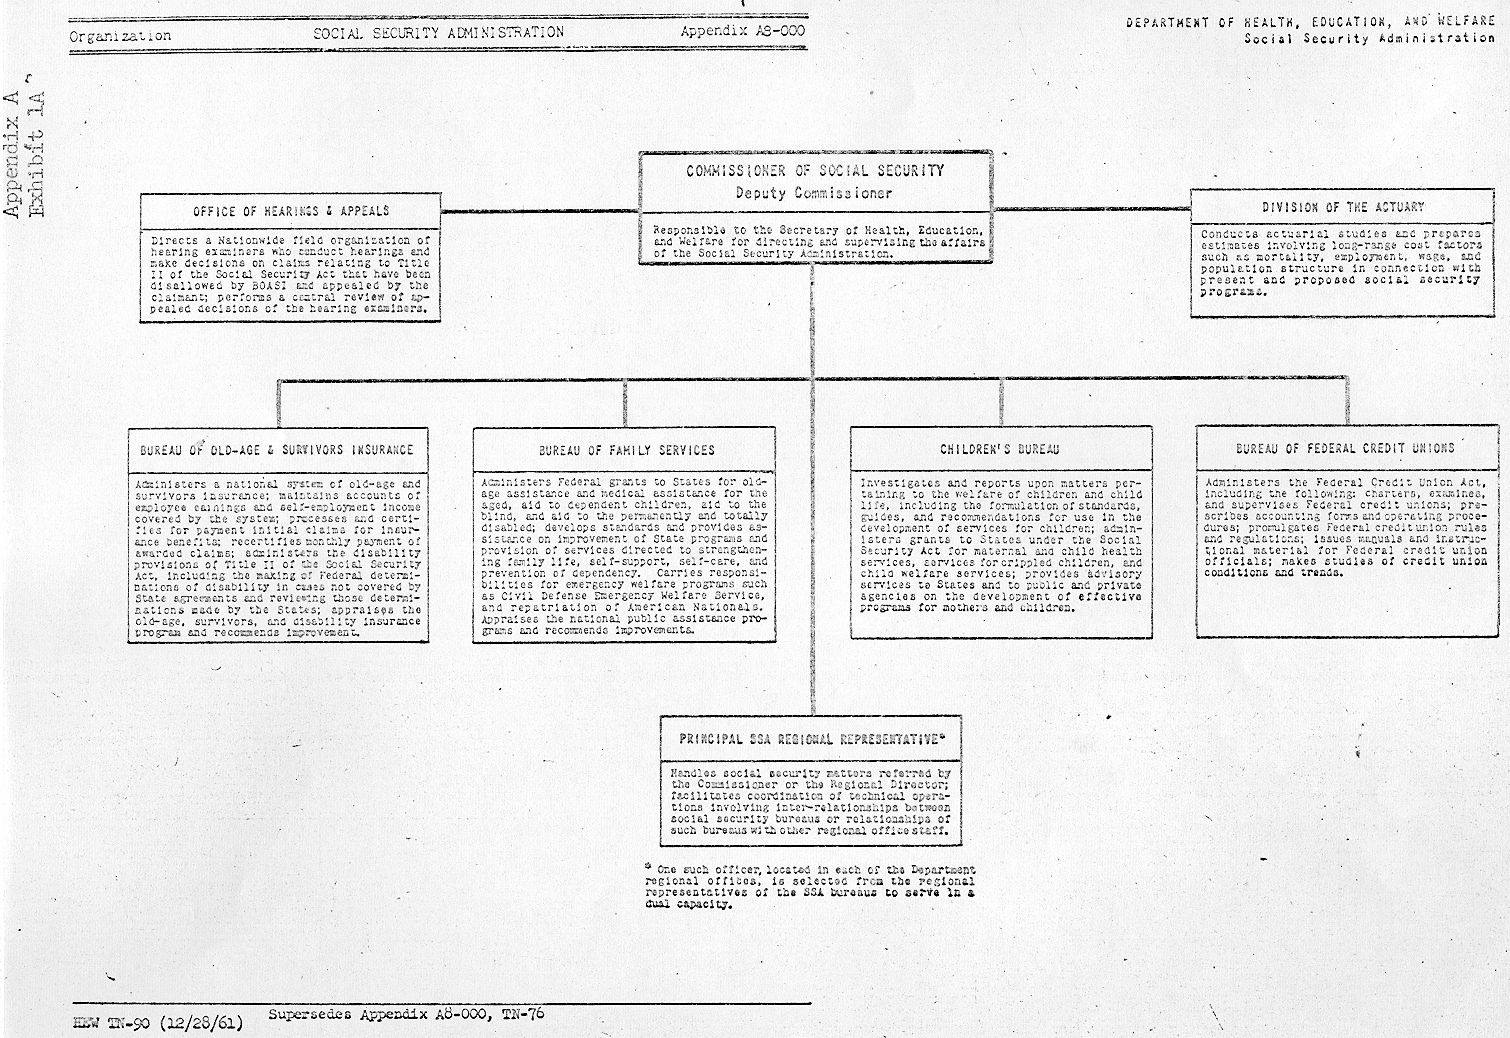 SSA org chart 1961